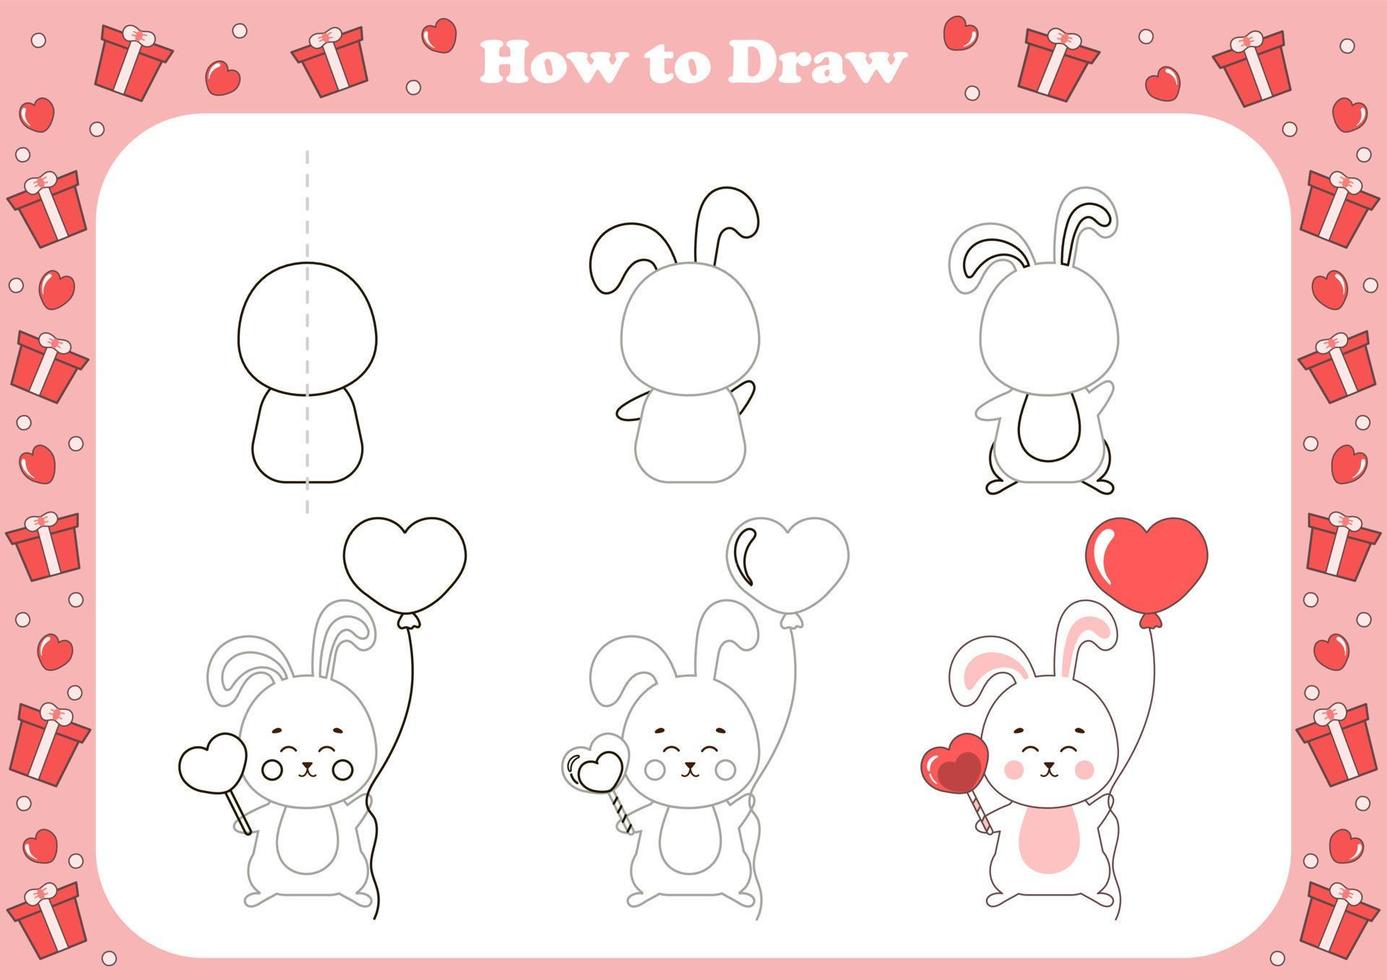 jogo fofo de como desenhar para crianças com personagem temático do dia dos namorados - coelho com balão em forma de coração vetor